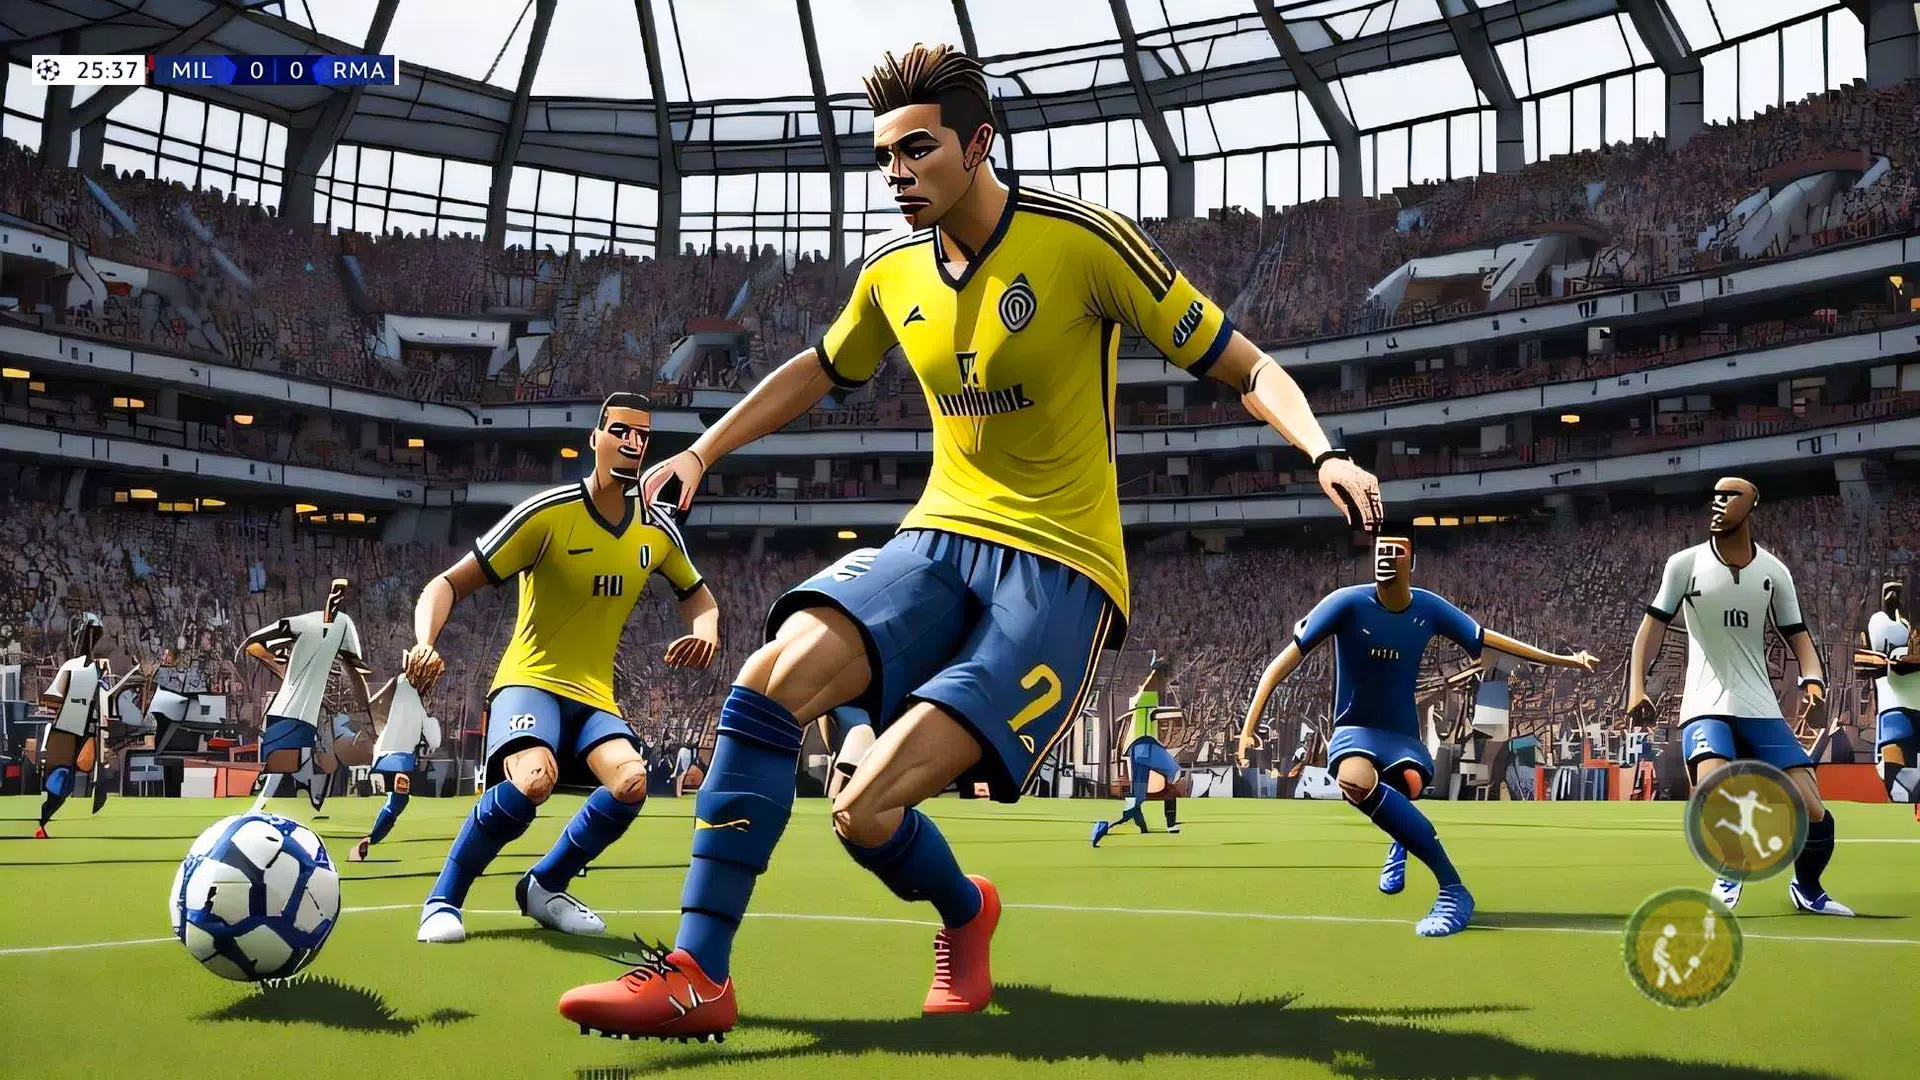 Futebol Jogos Offline 2022 1.3 من أجل Android - تنزيل APK